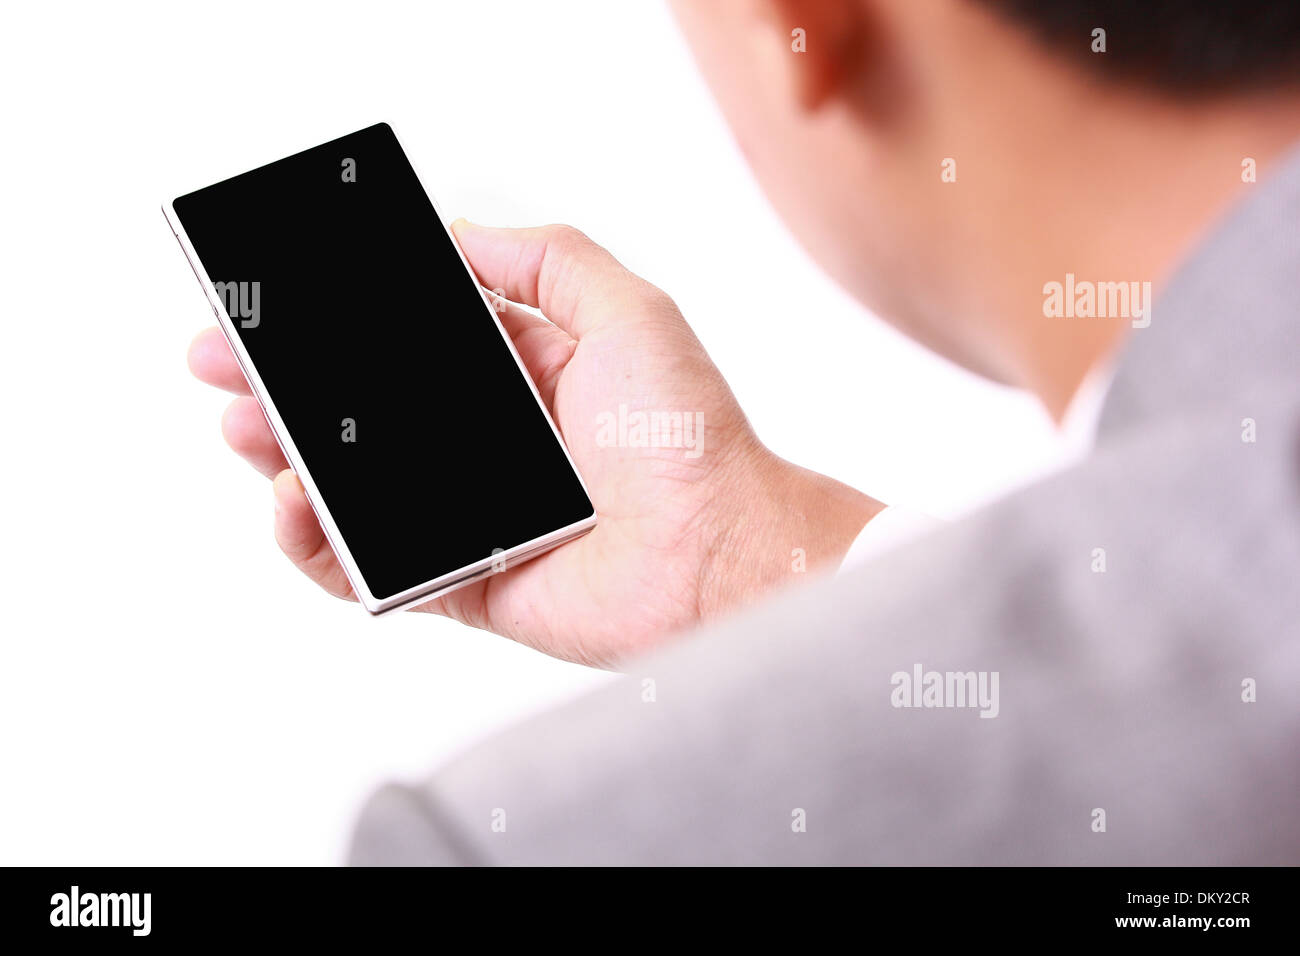 Smartphone personne utiliser isolé sur fond blanc Banque D'Images